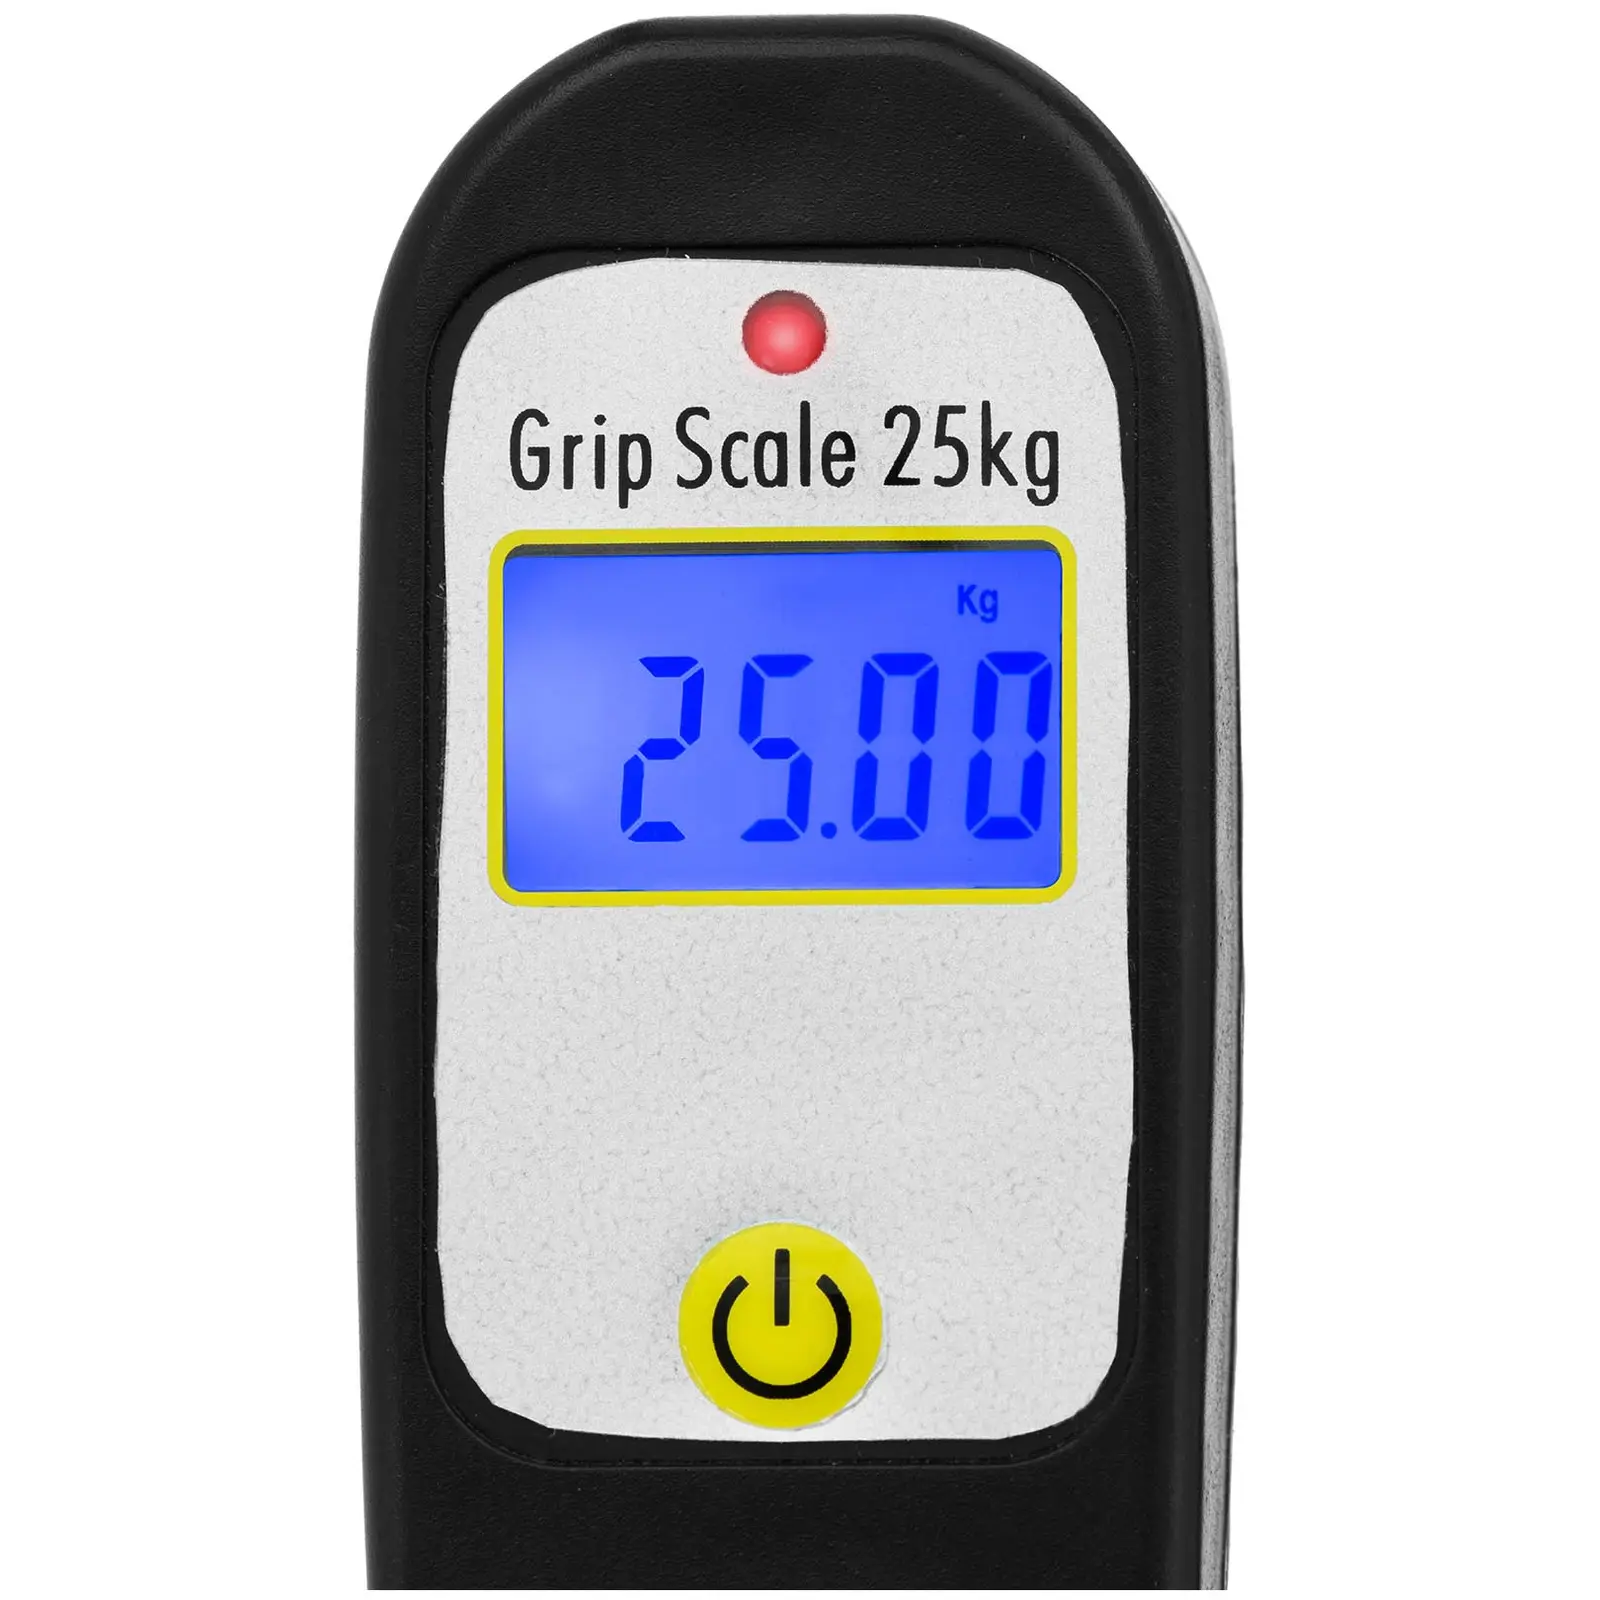 Lip grip - 25 kg - Med digital våg - LCD - Med tillbehör